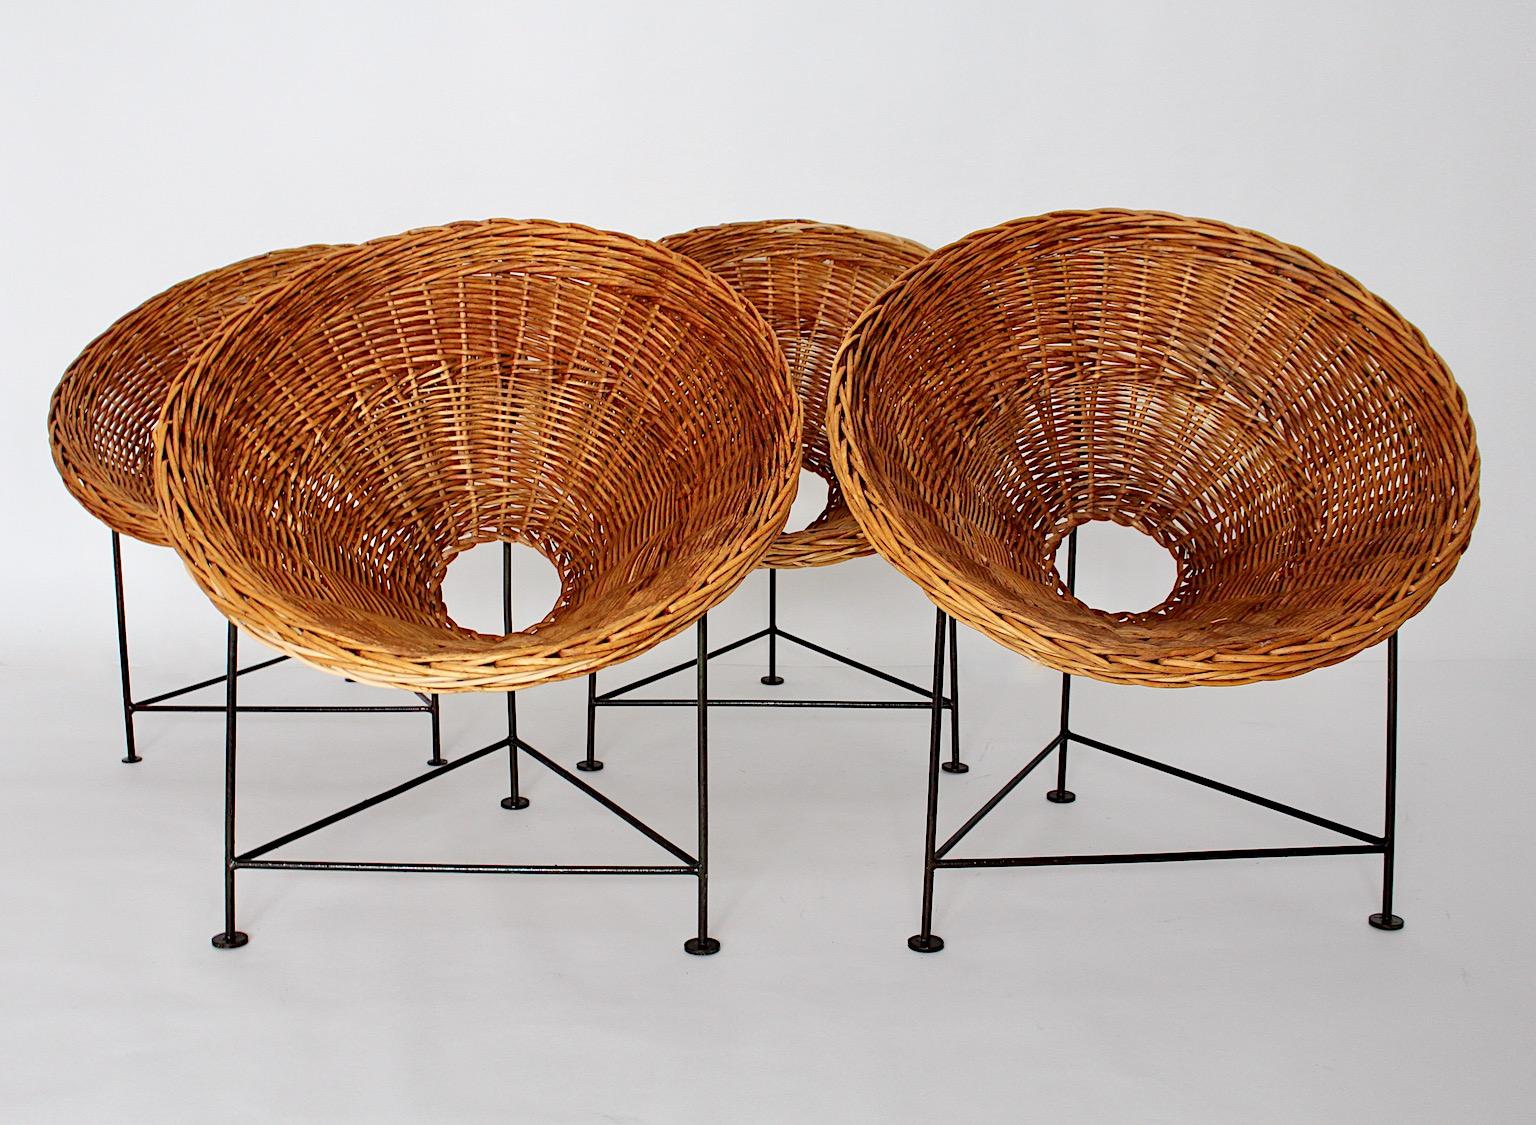 Ensemble vintage Mid-Century Modern de quatre chaises de salon ou chaises de patio en réseau de saule et structure en métal laqué noir.
Le magnifique siège seau ou cône en réseau de saule dans un ton brun miel auquel vous pourrez ajouter des